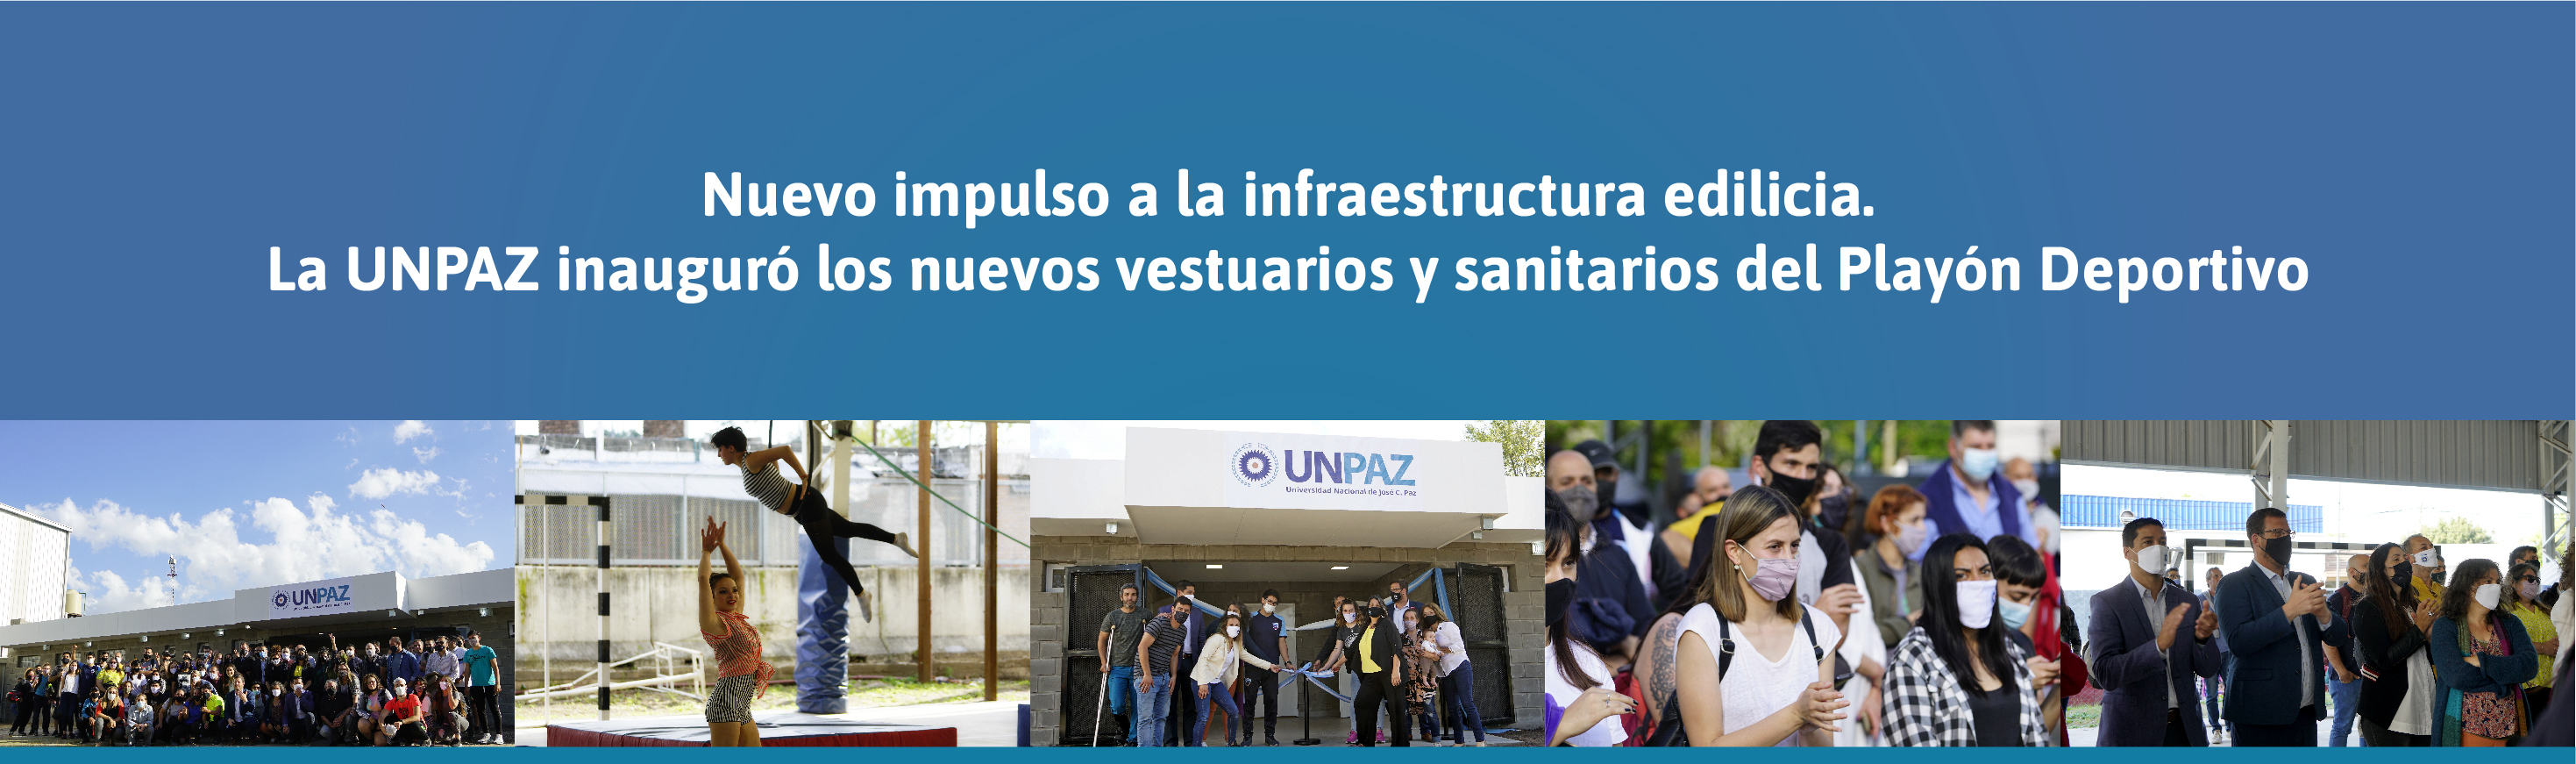 Inauguración de vestuarios y sanitarios de UNPAZ